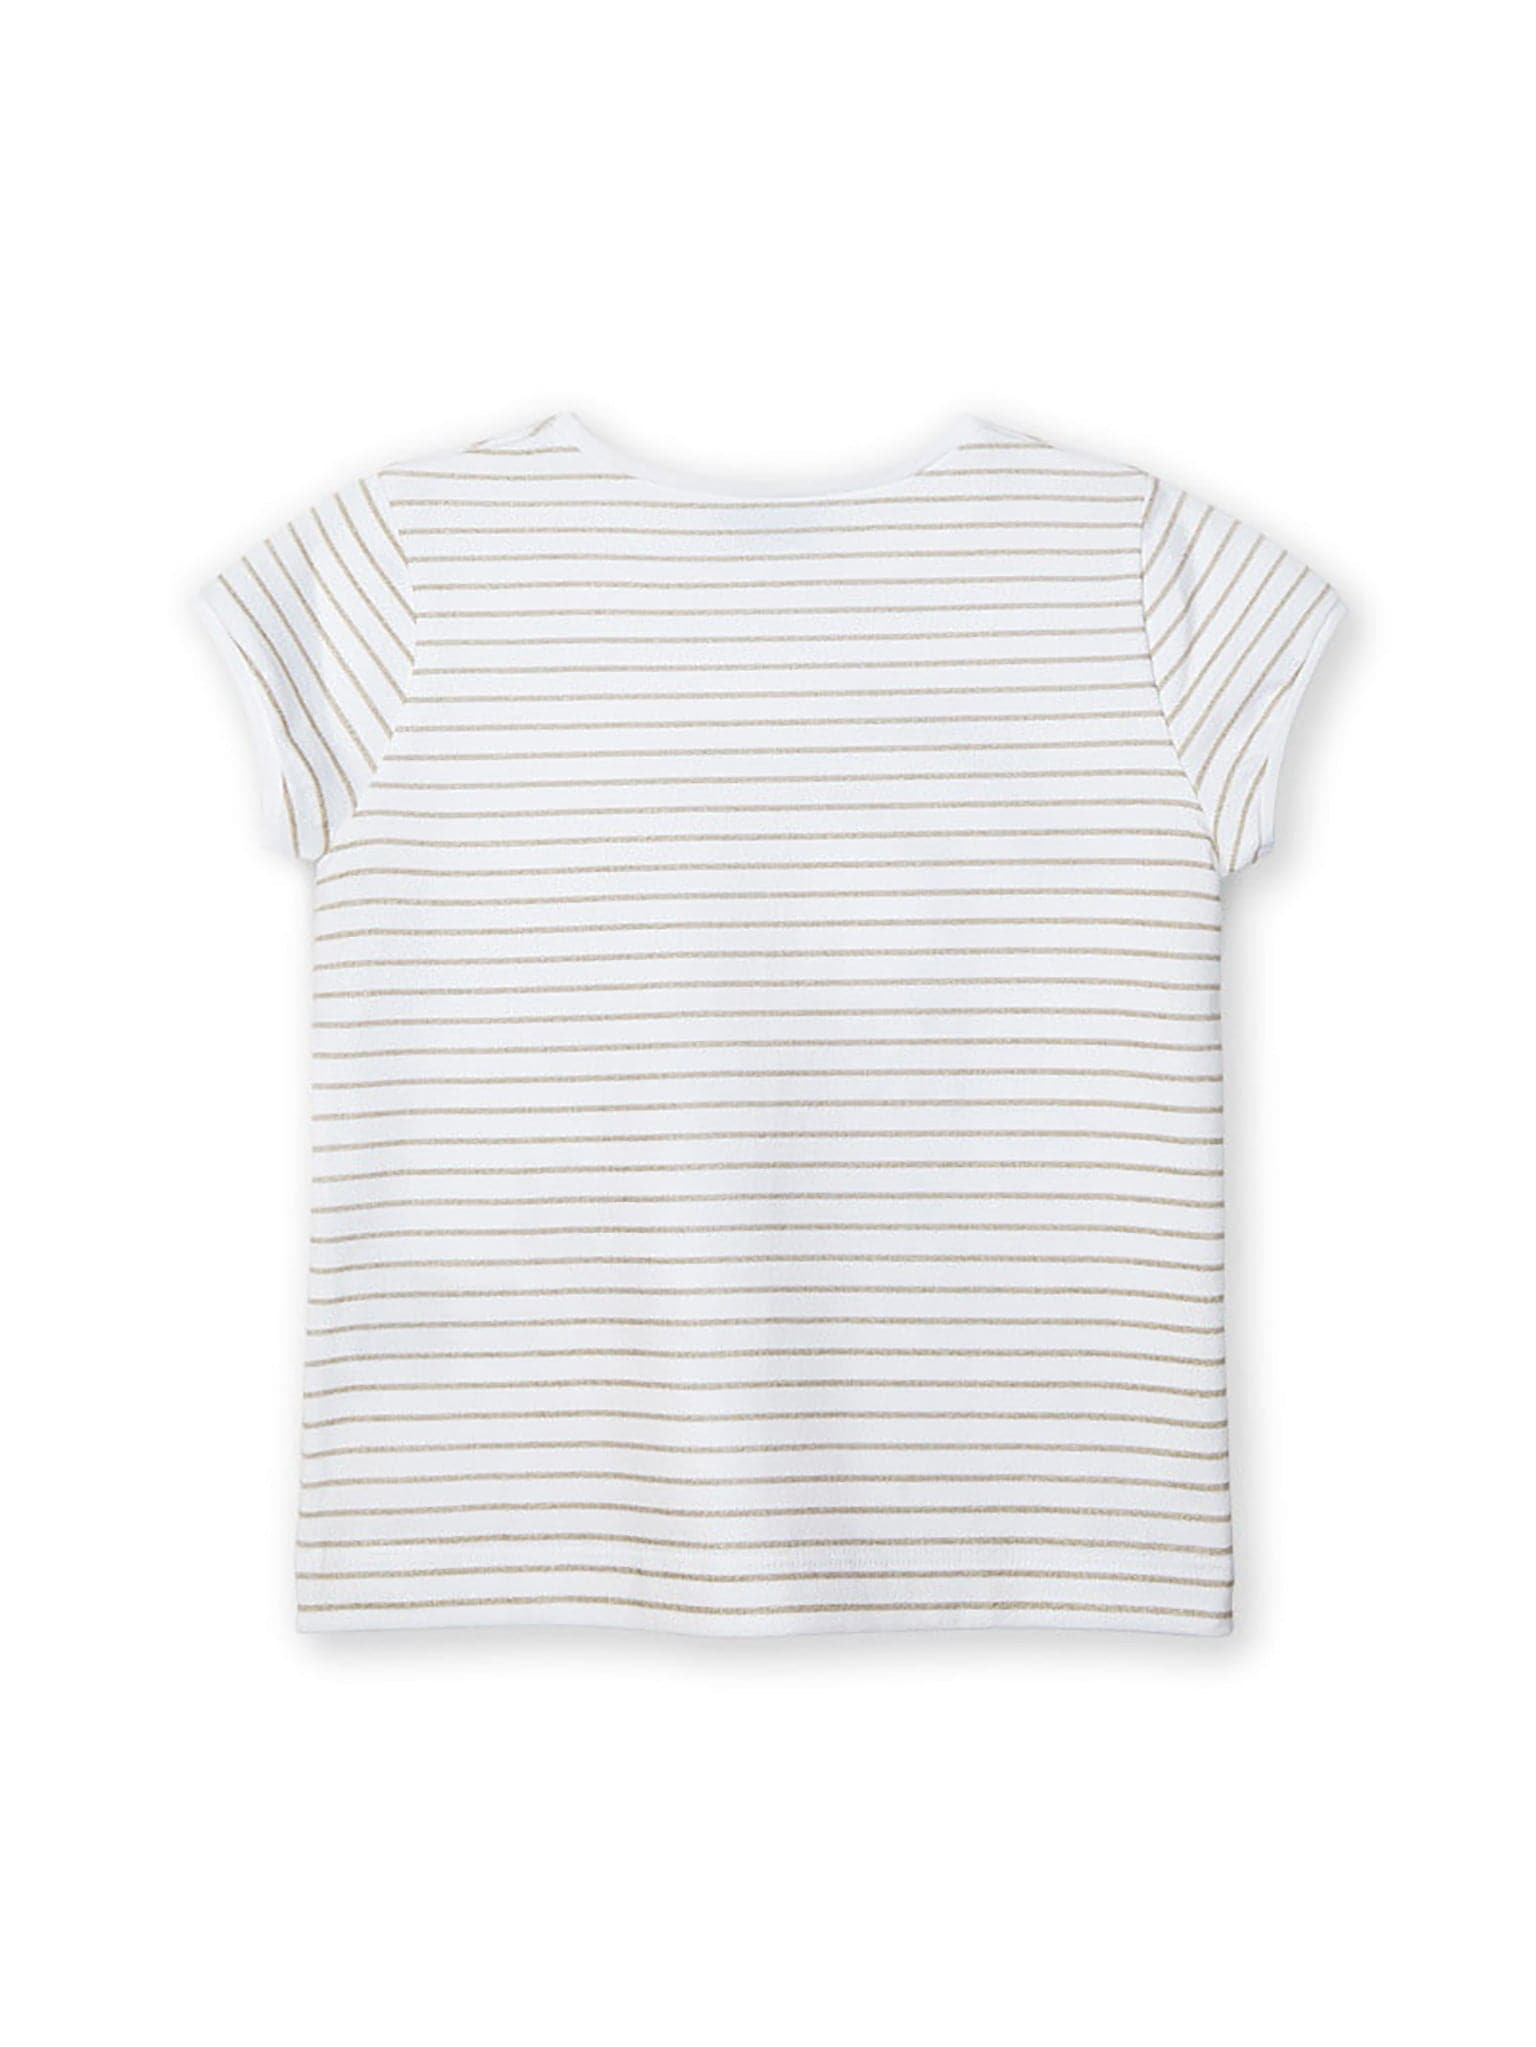 Παιδική μπλούζα ριγέ με τύπωμα | 21-03012-033